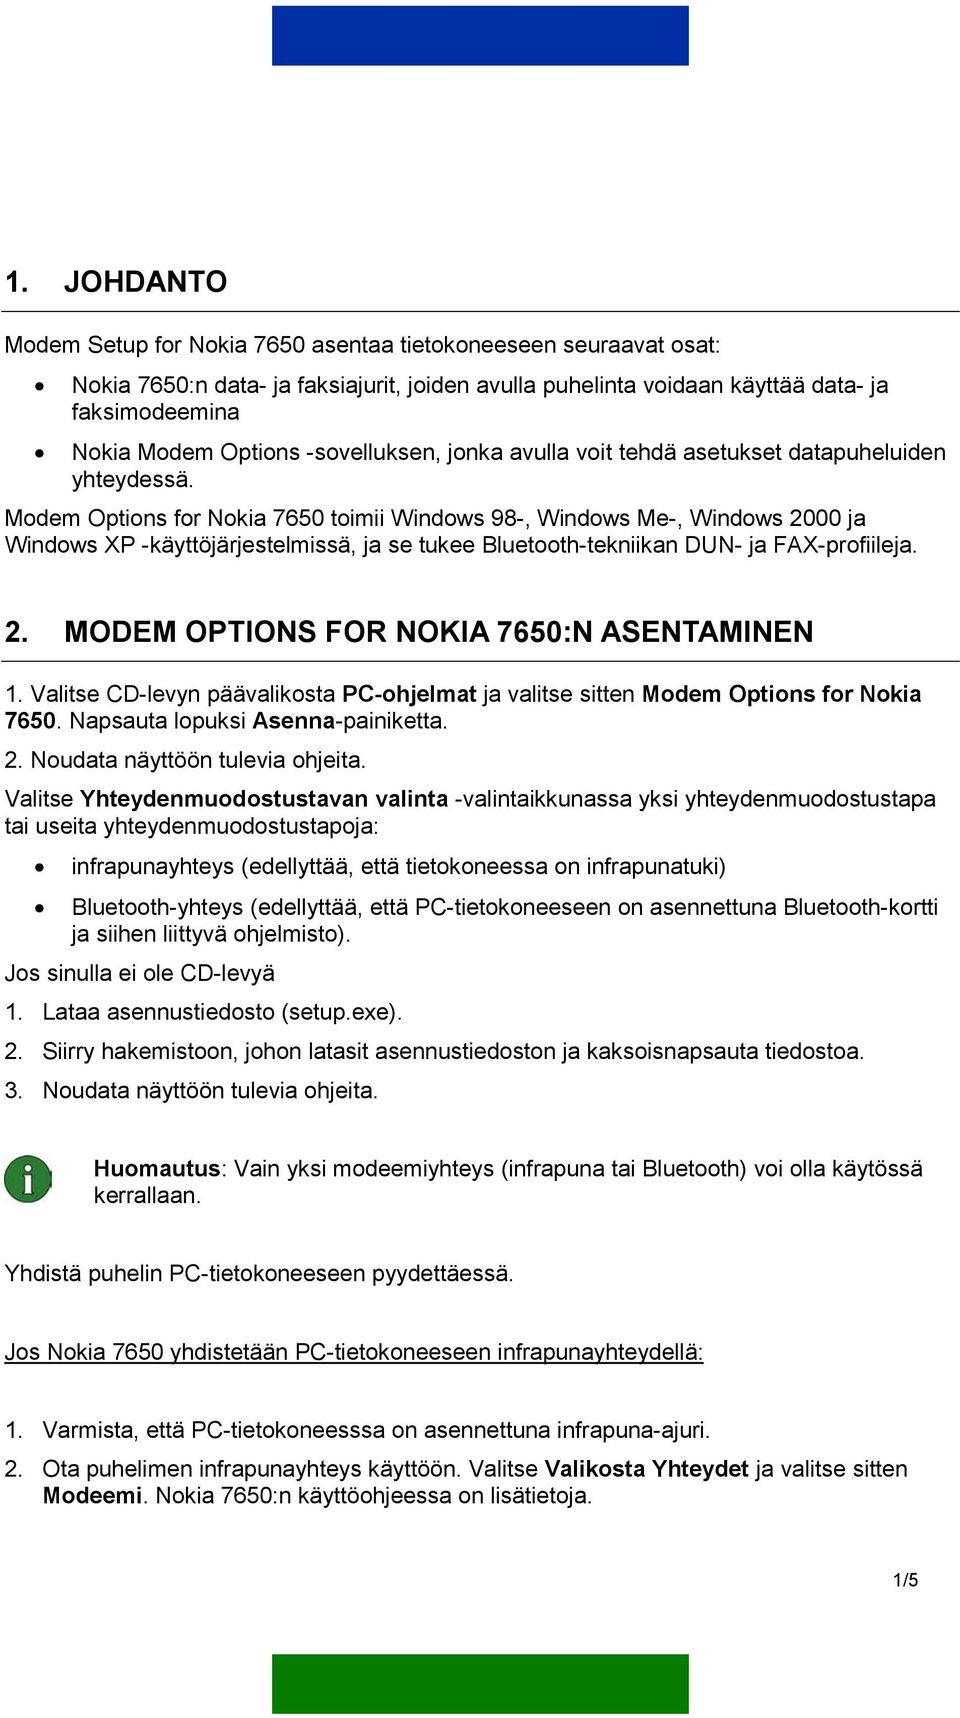 Modem Options for Nokia 7650 toimii Windows 98-, Windows Me-, Windows 2000 ja Windows XP -käyttöjärjestelmissä, ja se tukee Bluetooth-tekniikan DUN- ja FAX-profiileja. 2. MODEM OPTIONS FOR NOKIA 7650:N ASENTAMINEN 1.